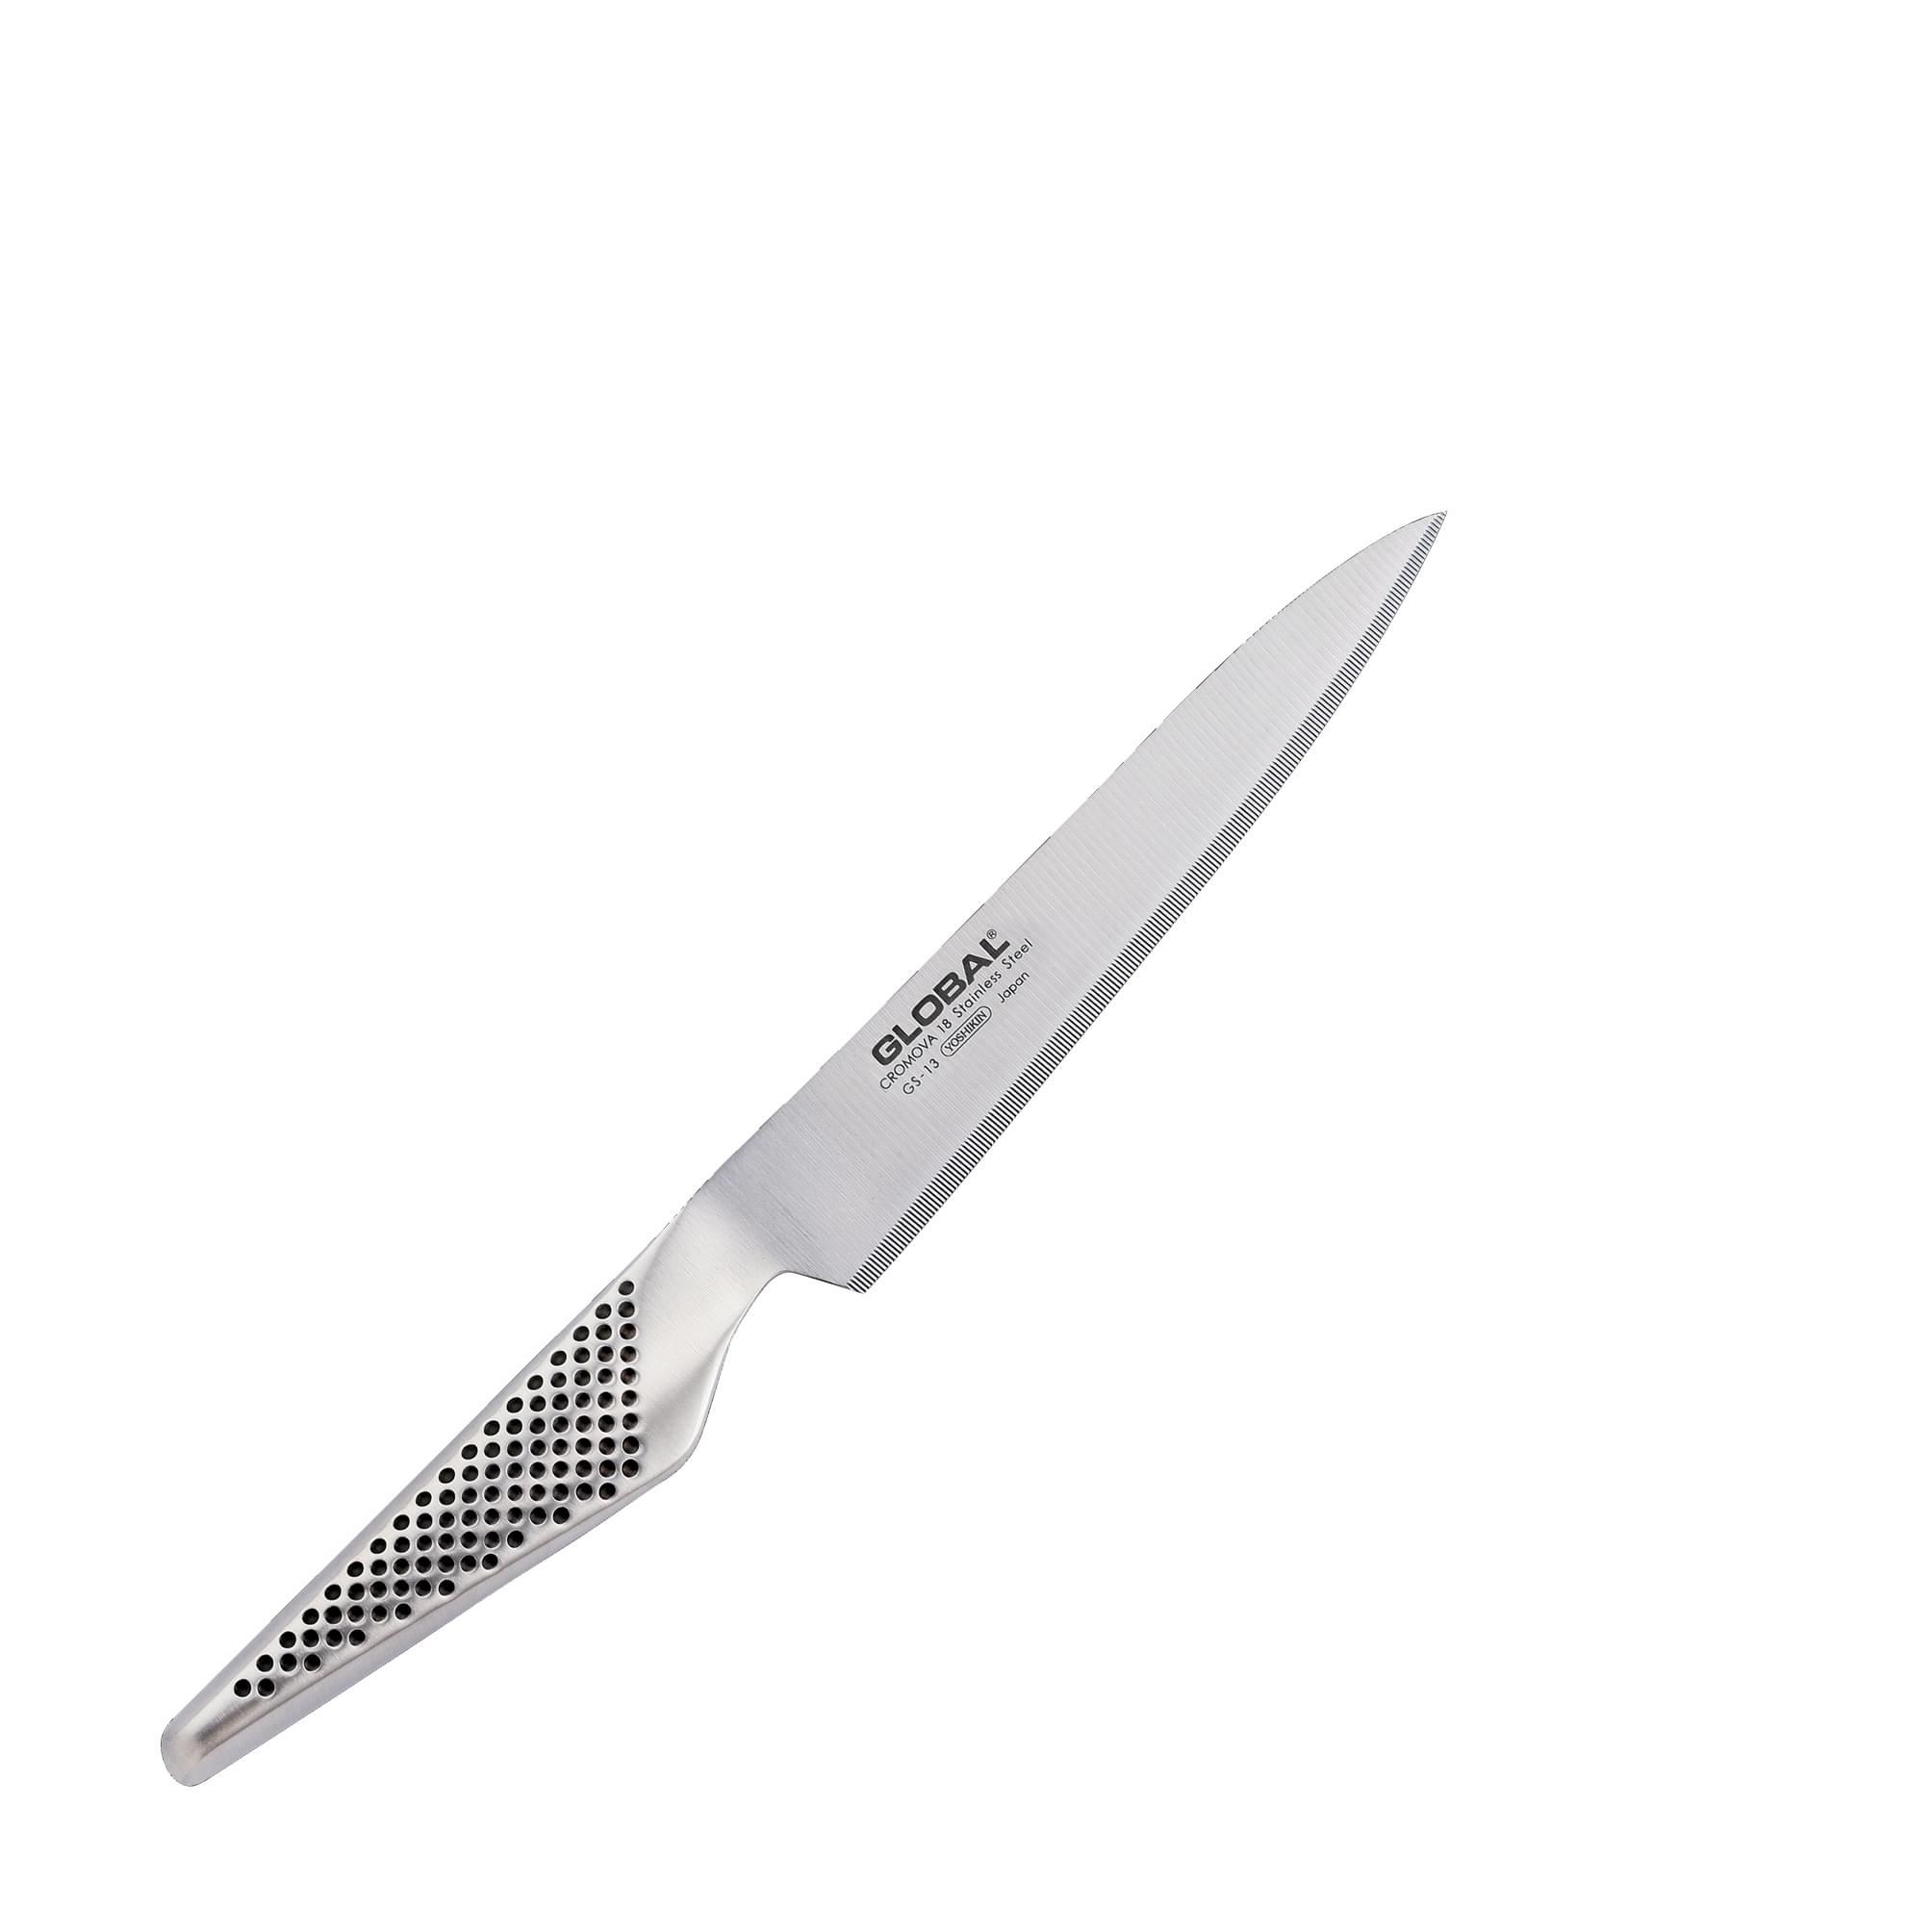 Global GS13R destrimani coltello lama microseghettata